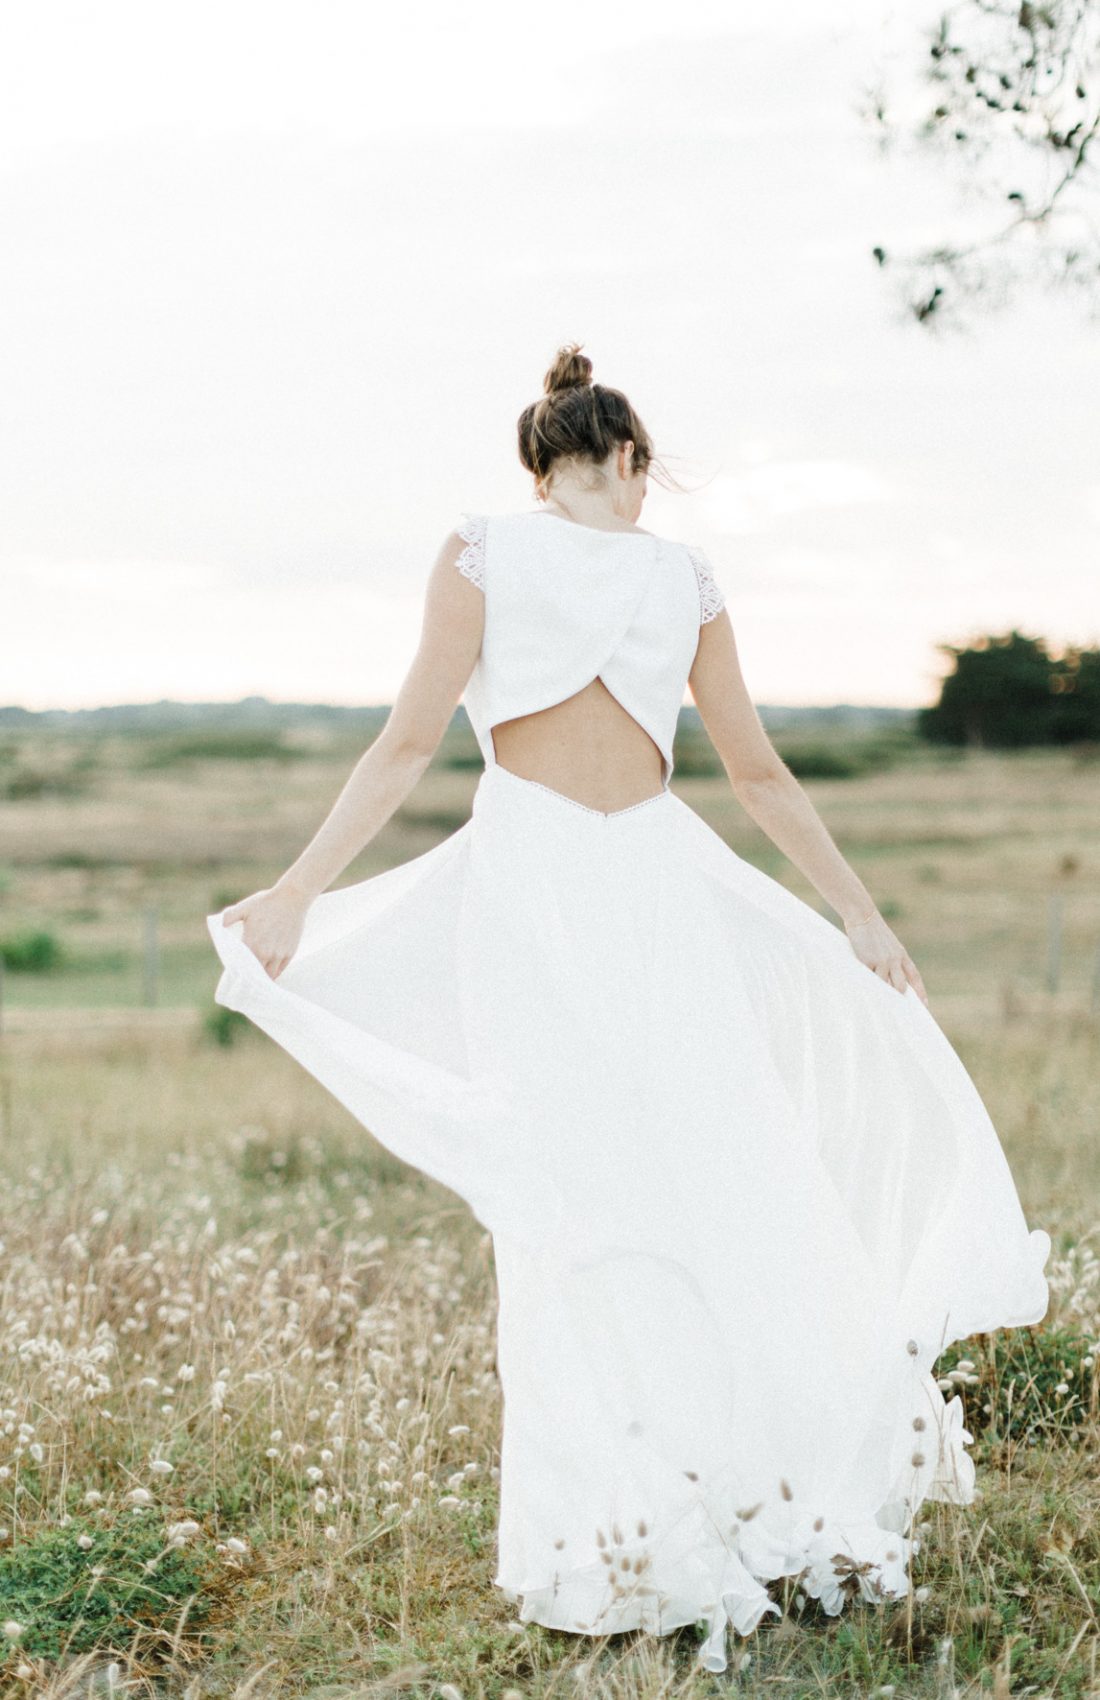 ambre robe de mariée 2019